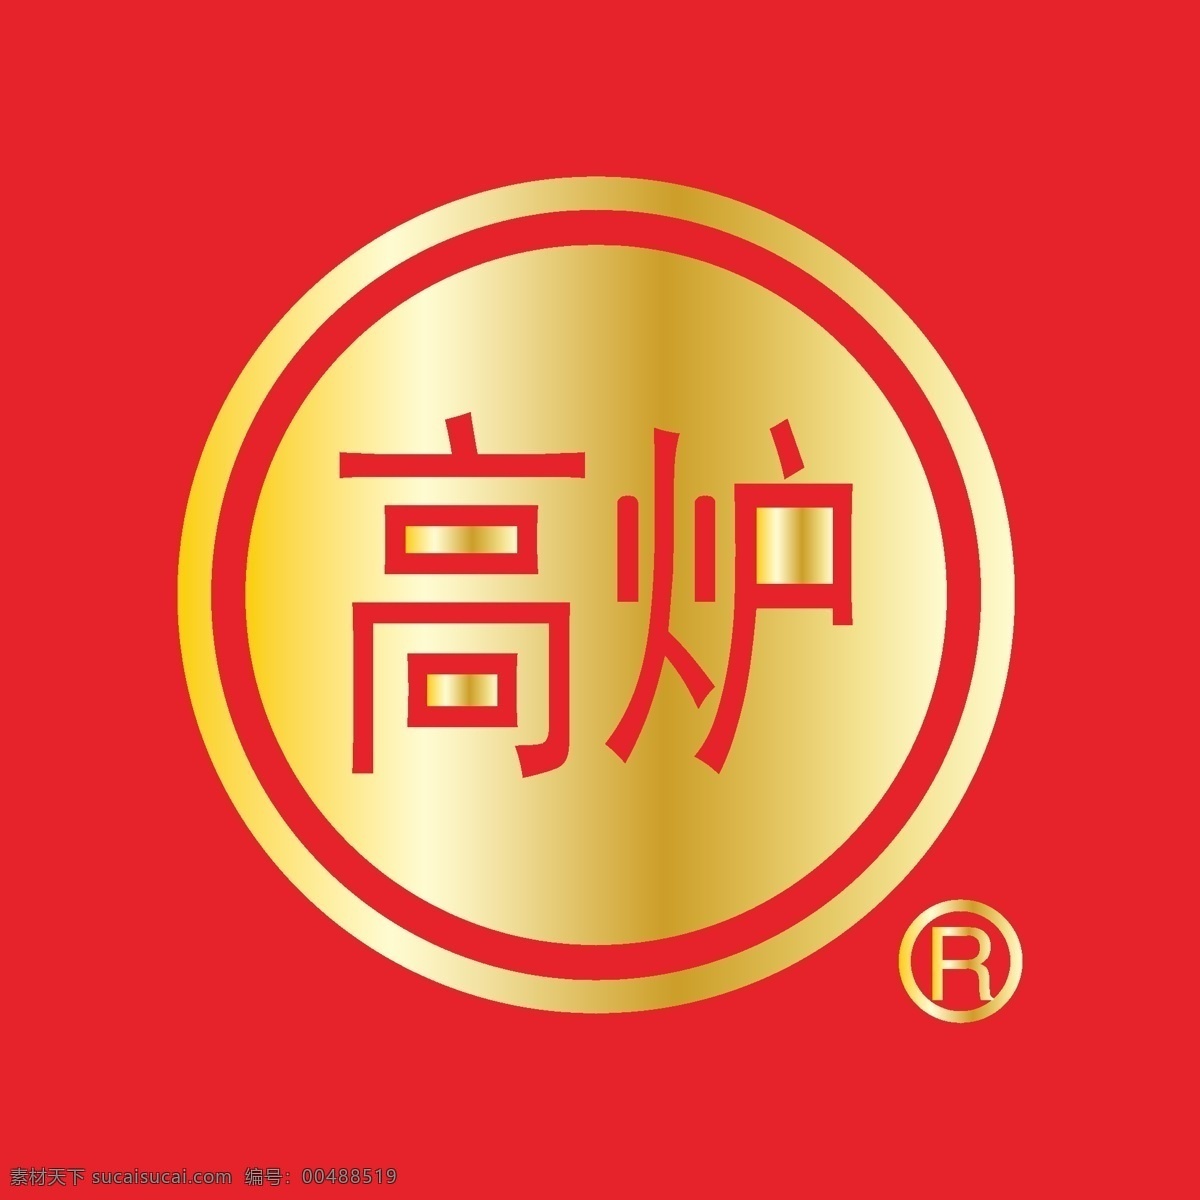 酒类 标志 酒类标志 酒类素材 中国驰名商标 矢量图